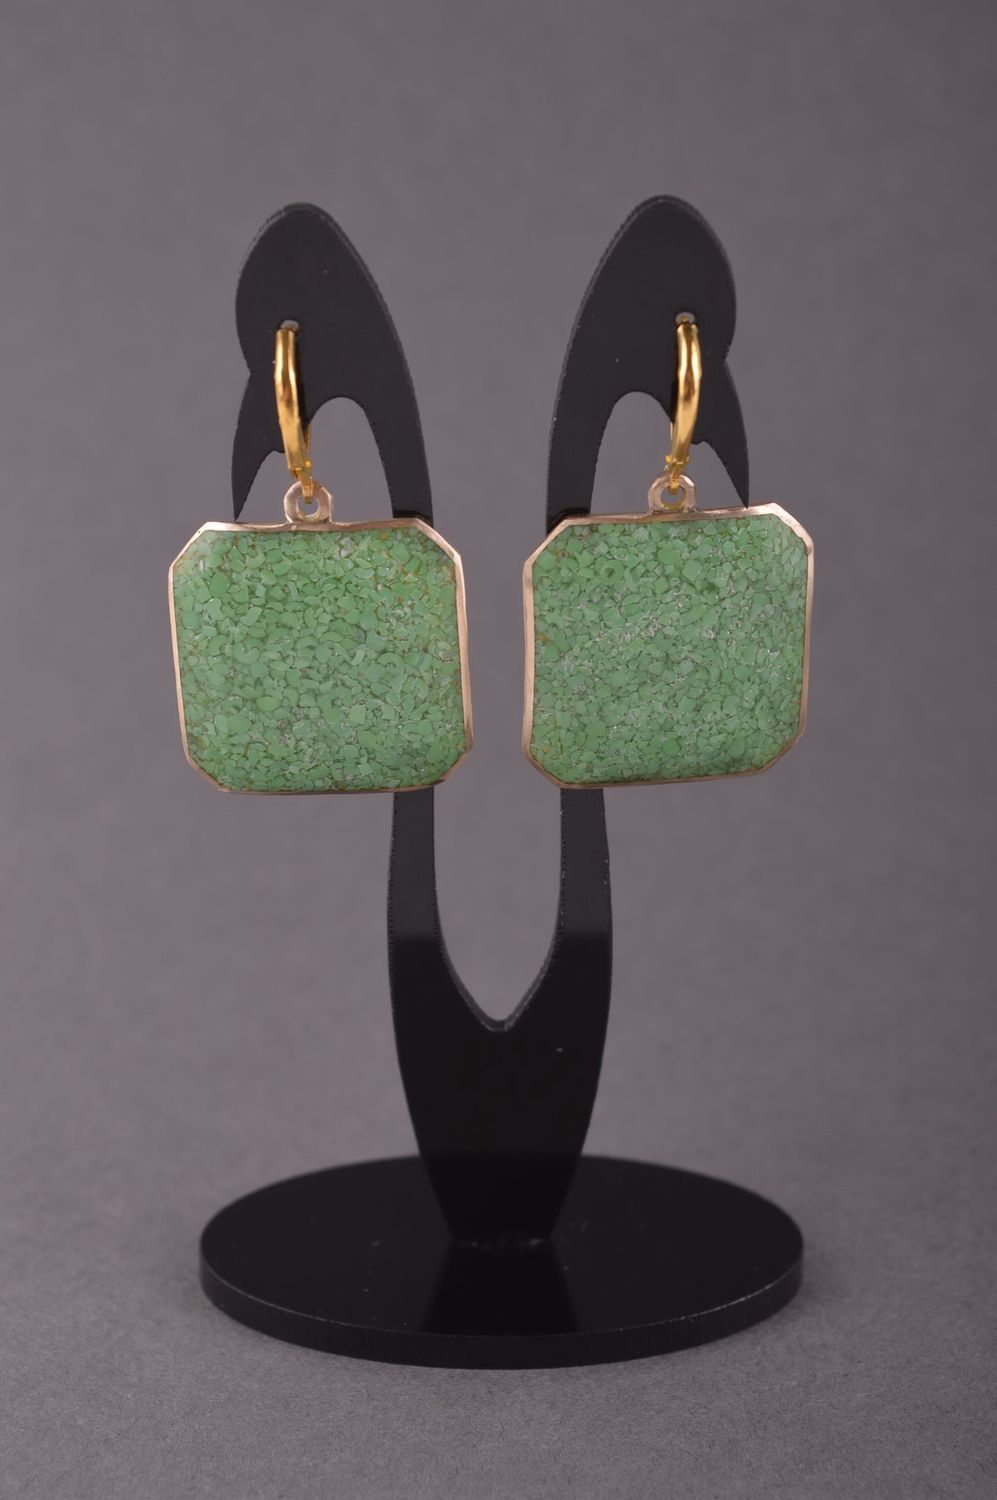 Украшение из латуни handmade серьги из натуральных камней модные серьги зеленые фото 1